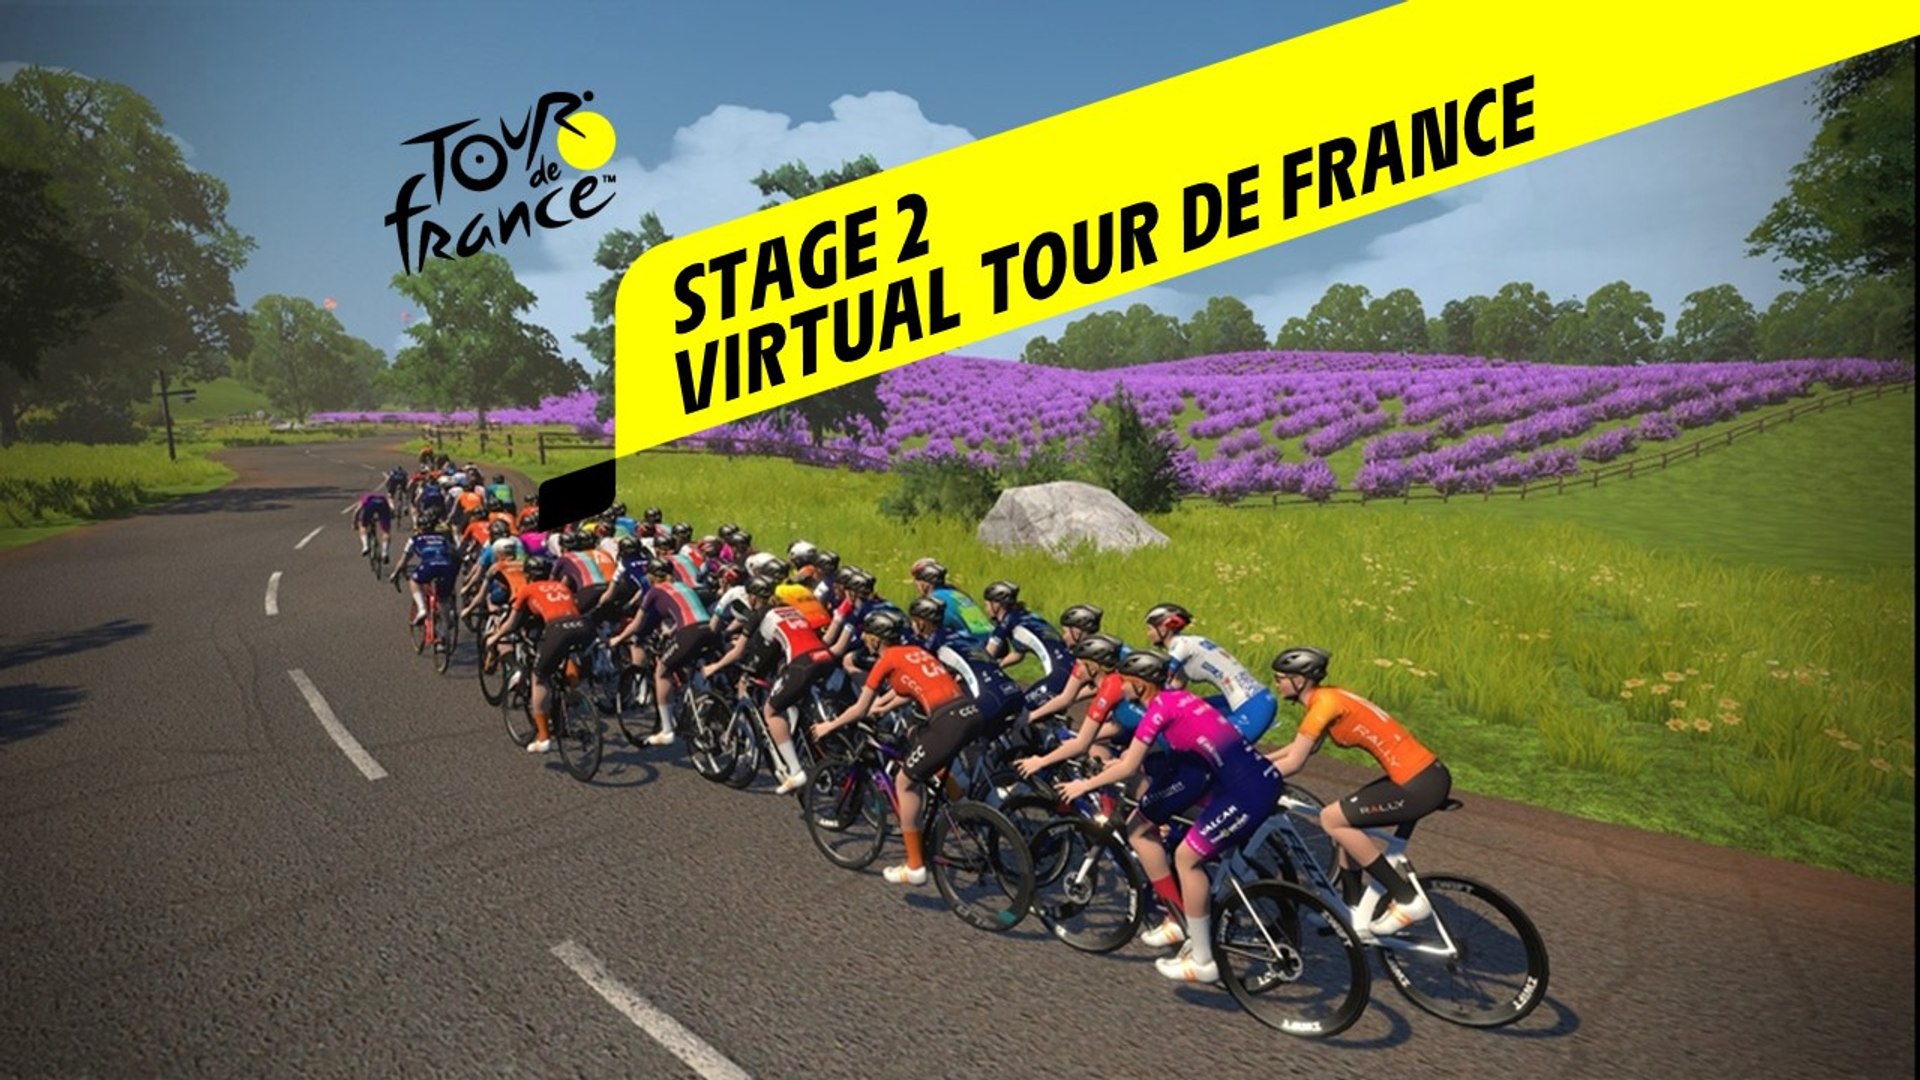 Virtual Tour de France 2020 - Live Stage 2 - Vidéo Dailymotion